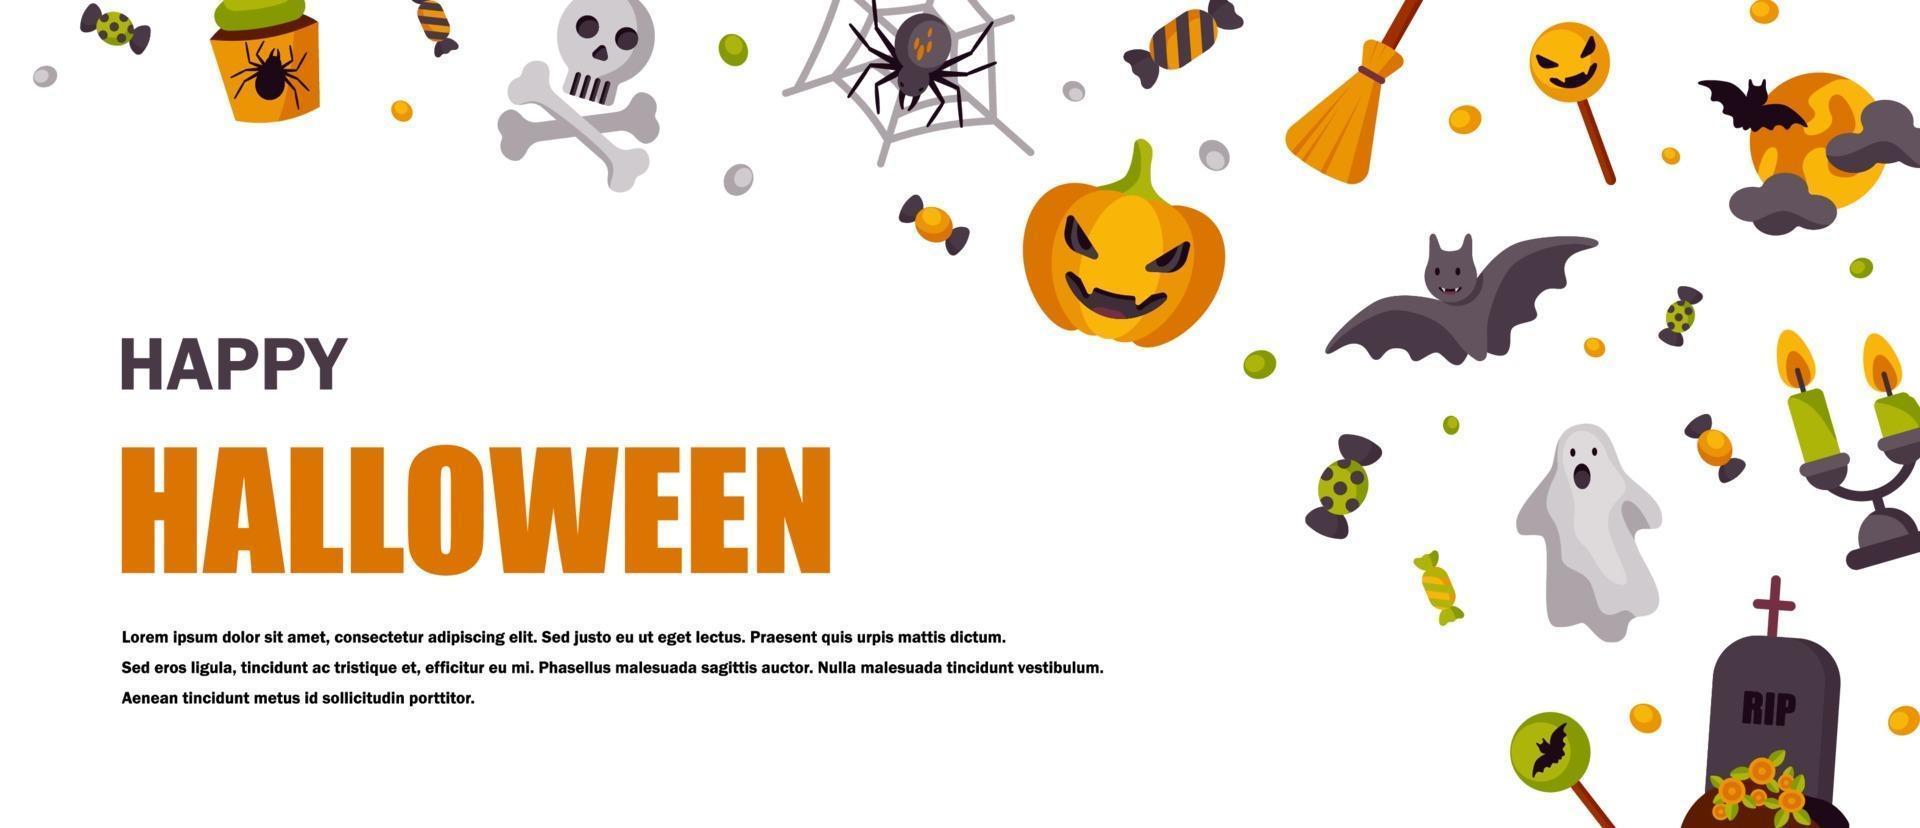 banner horizontal lindo de halloween. espacio para texto. ilustración vectorial vector